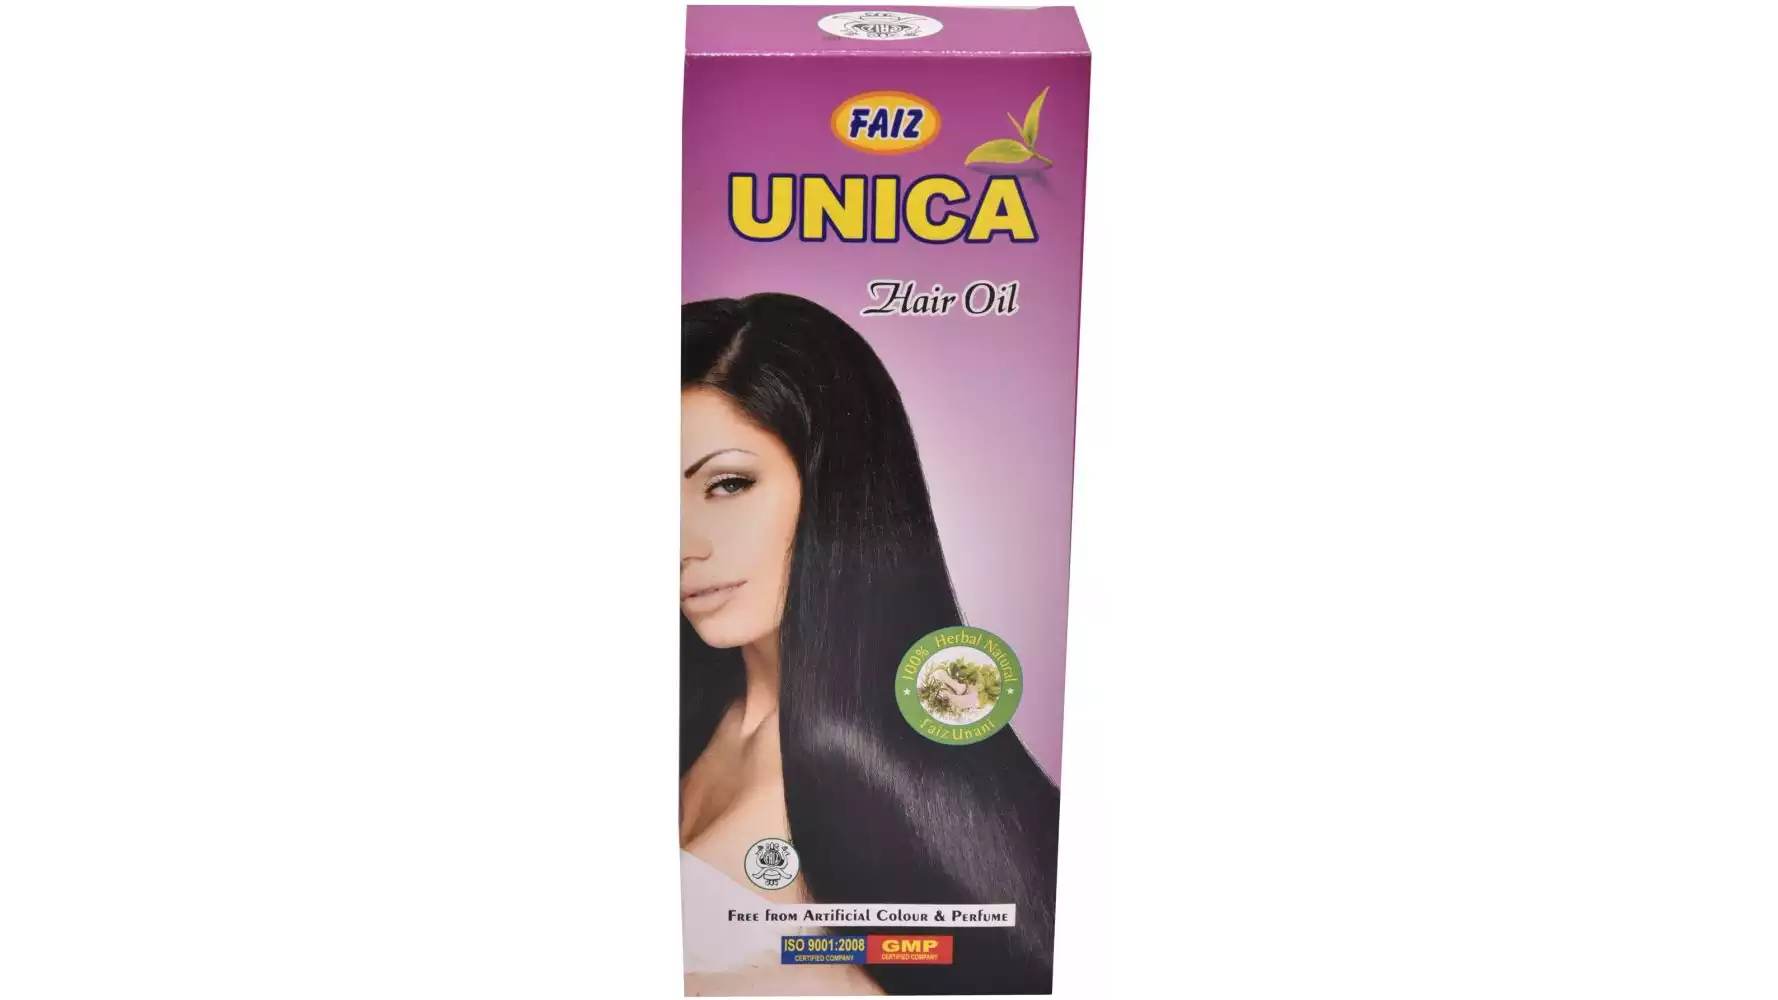 Faiz Unica Herbal Hair Oil (200ml)